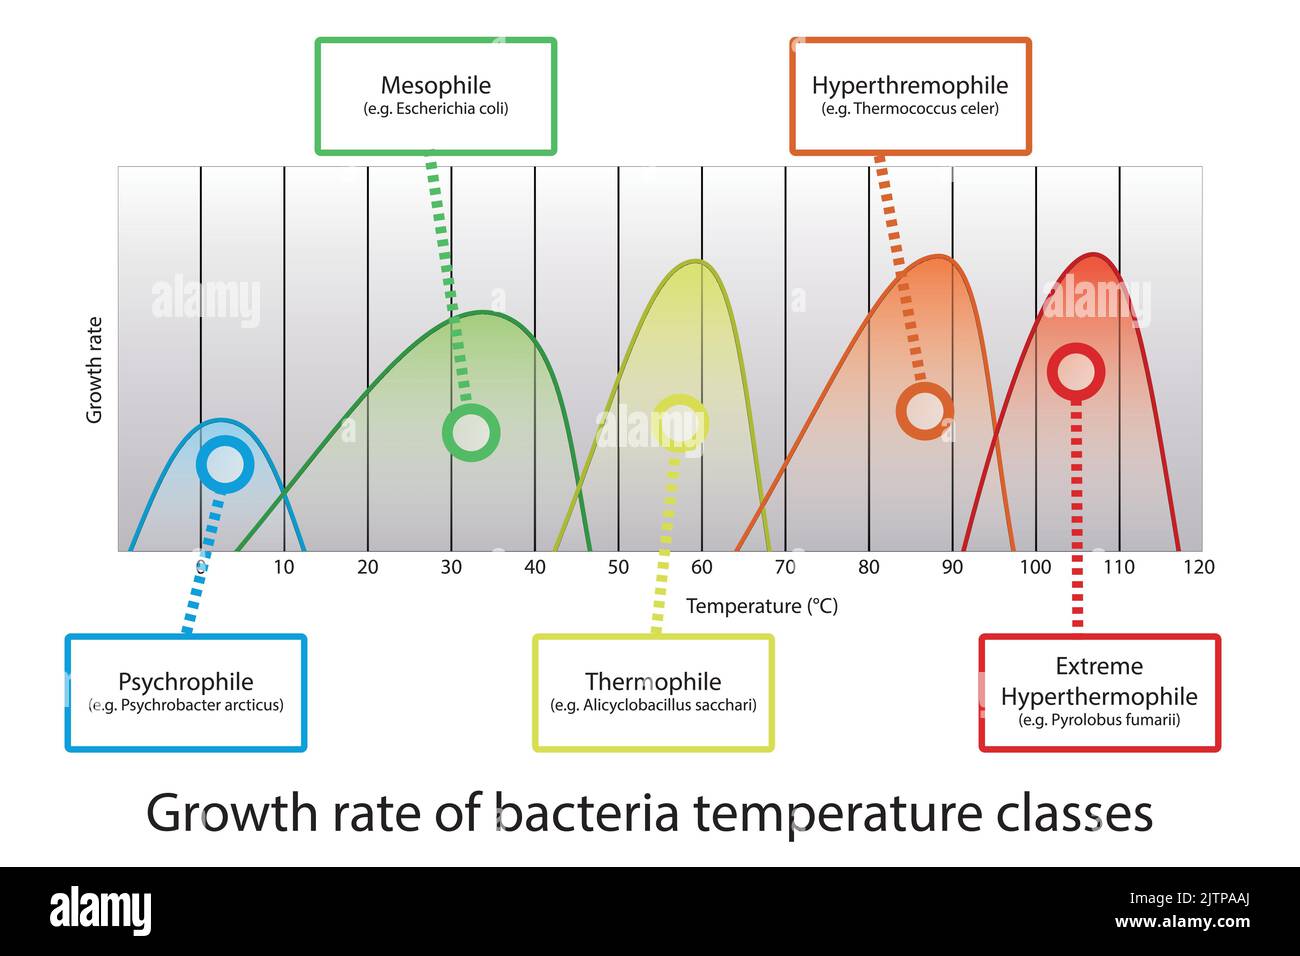 Diagramma dell'intervallo di temperatura ottimale dei microrganismi - tassi di crescita di psicrofile, mesofilo, tremofilo e ipertermofilo con batteri di esempio. Illustrazione Vettoriale